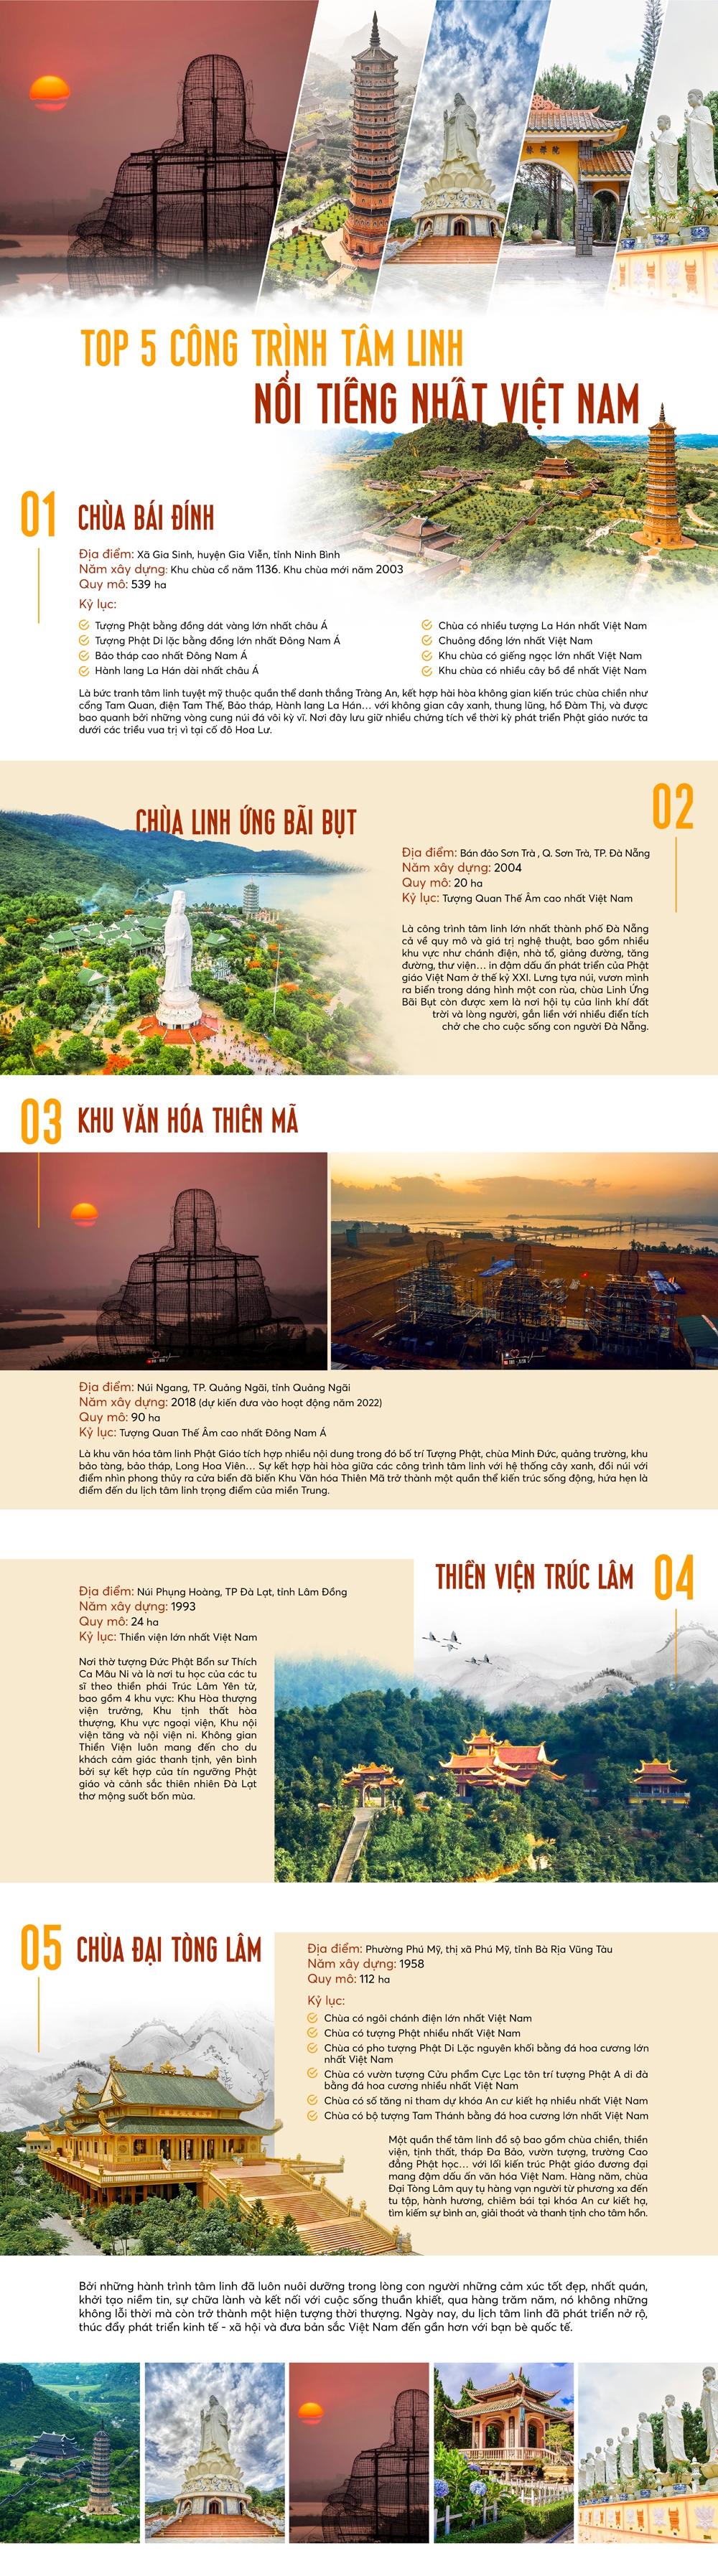 Top 5 công trình tâm linh nổi tiếng nhất Việt Nam